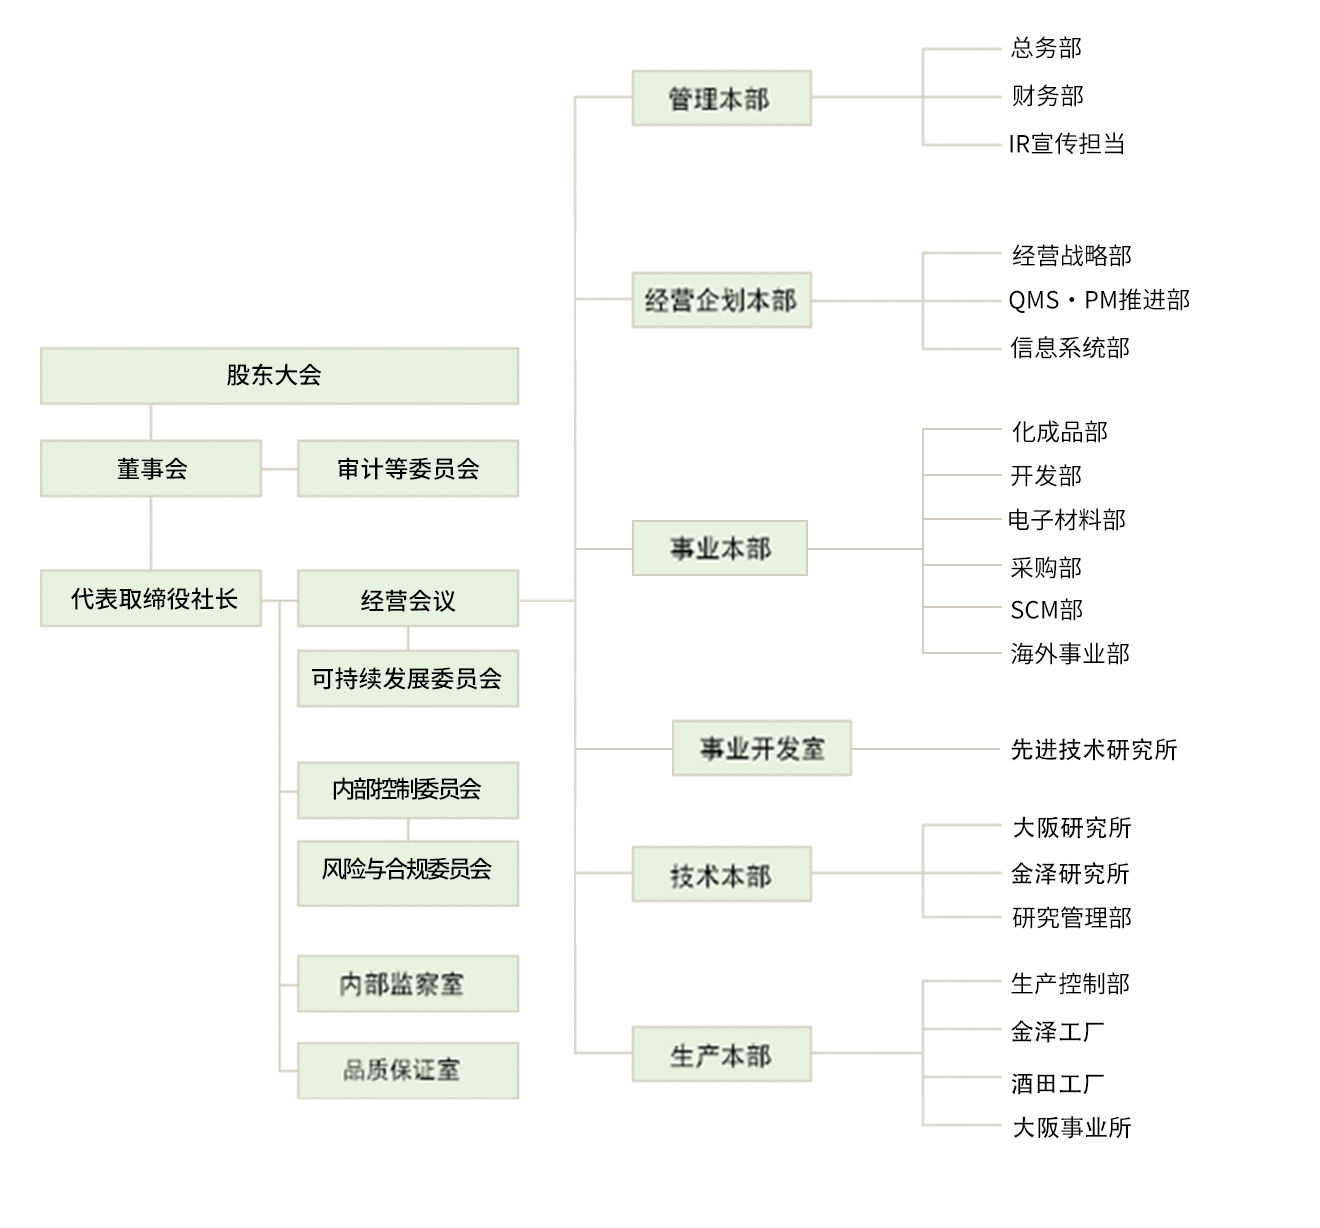 大阪有机化学工业株式会社 全公司组织机构图